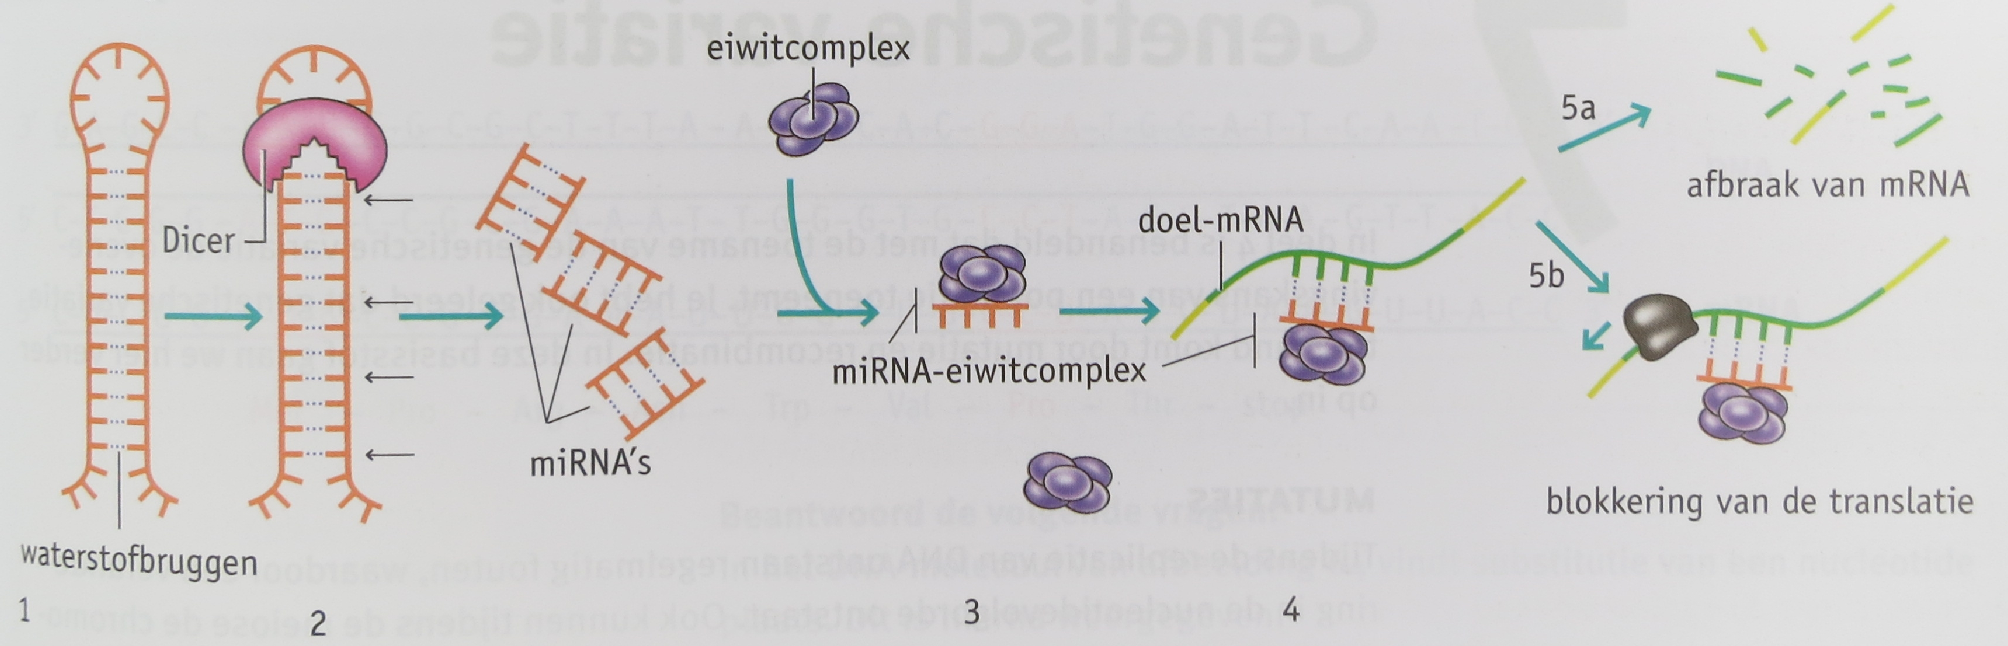 Afbeelding 33. RNA-interferentie.1 RNA bevat 2 complementaire sequenties die aan elkaar plakken, zodat er een haarspeld structuur ontstaat (1 van afbeelding 33).